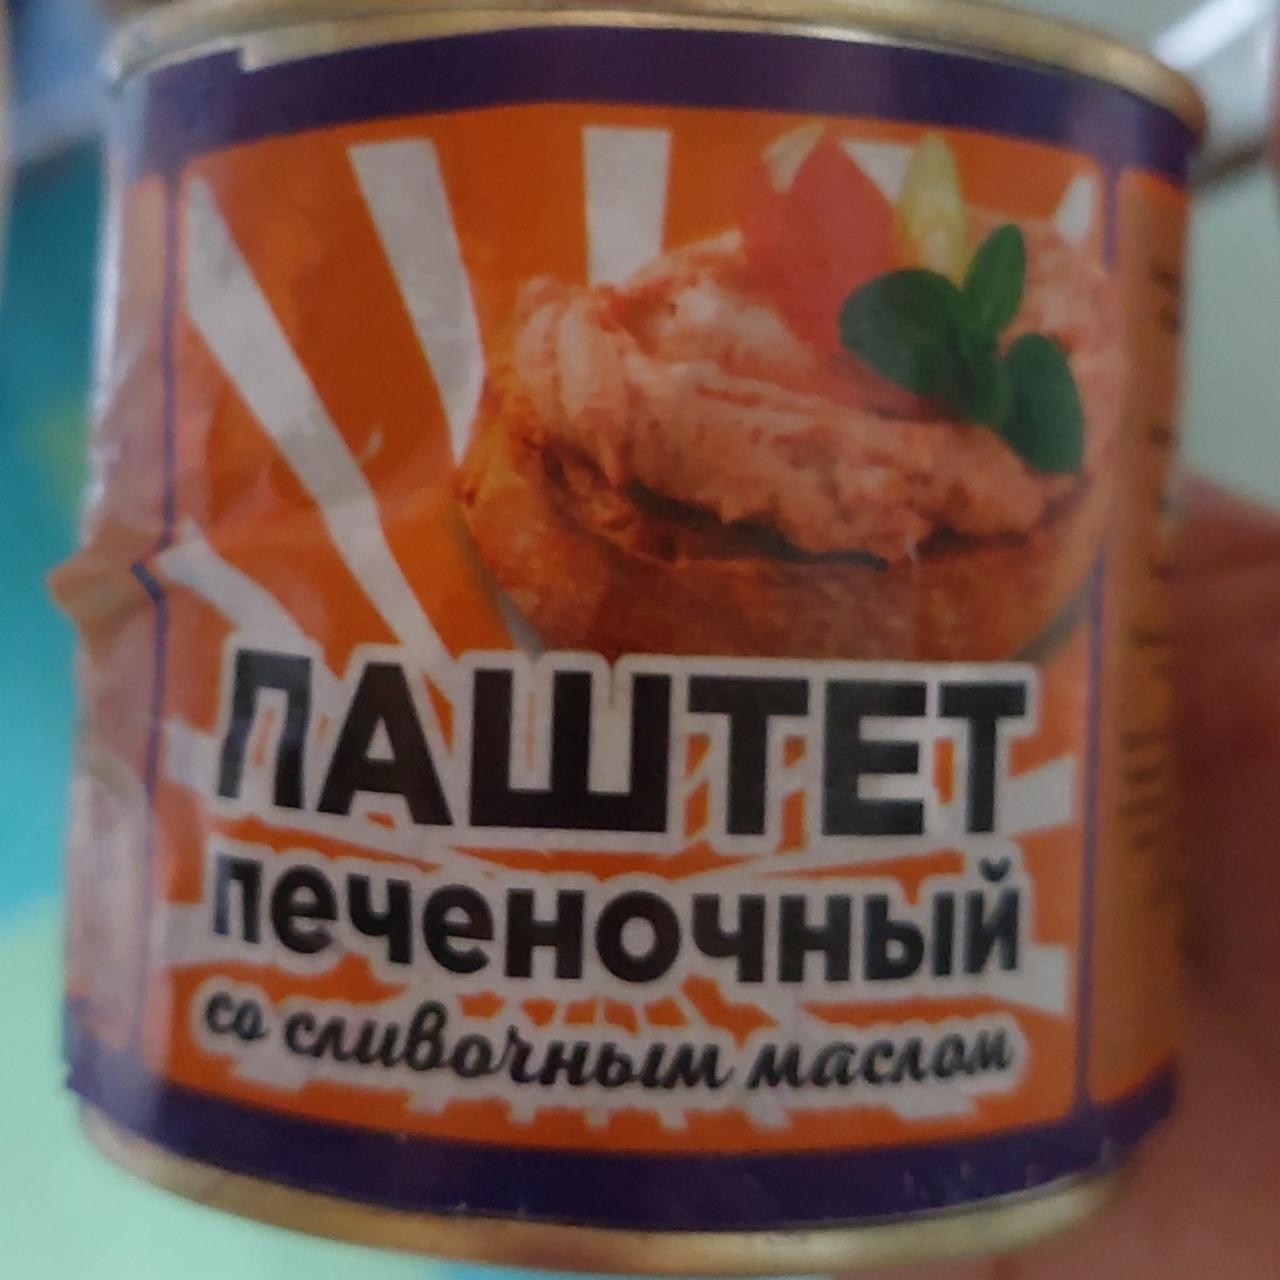 Фото - паштет печоночный со сливочным маслом Русь